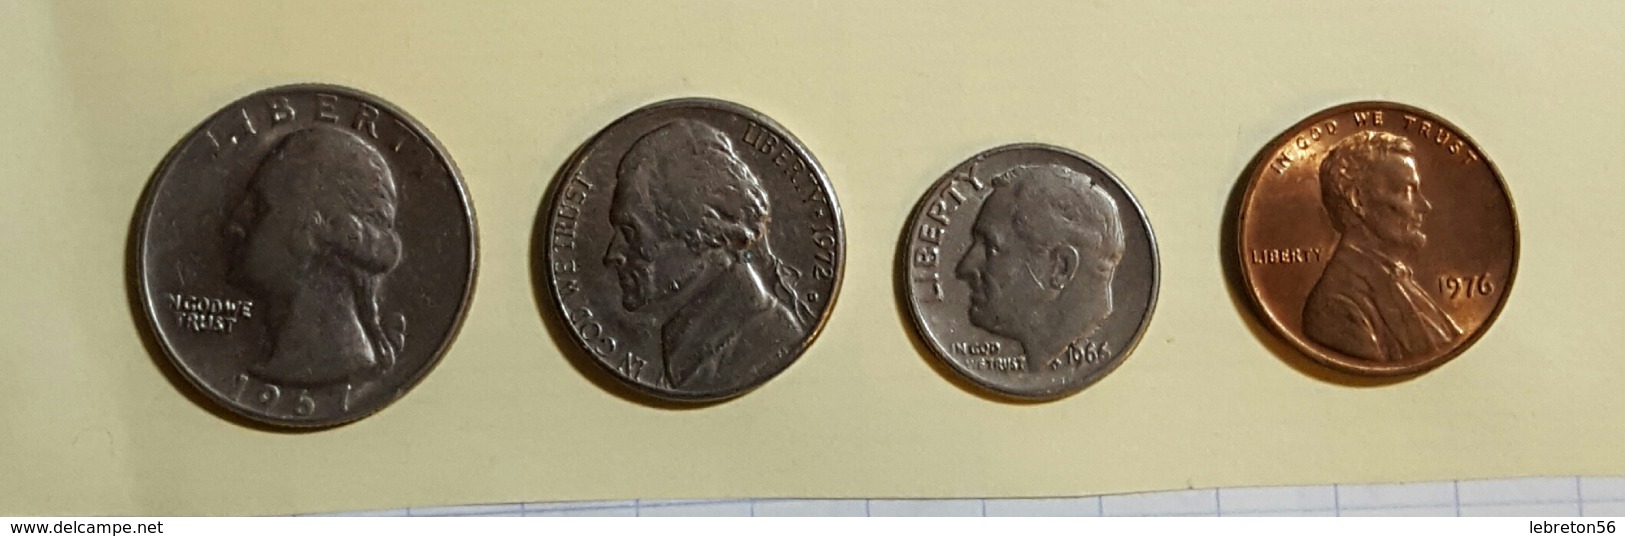 Etats Unis Quater Dollards 1967 Five Cent 1972 One Dime 1966 On Cent1976 Voir Les Deux Photos - Kiloware - Münzen